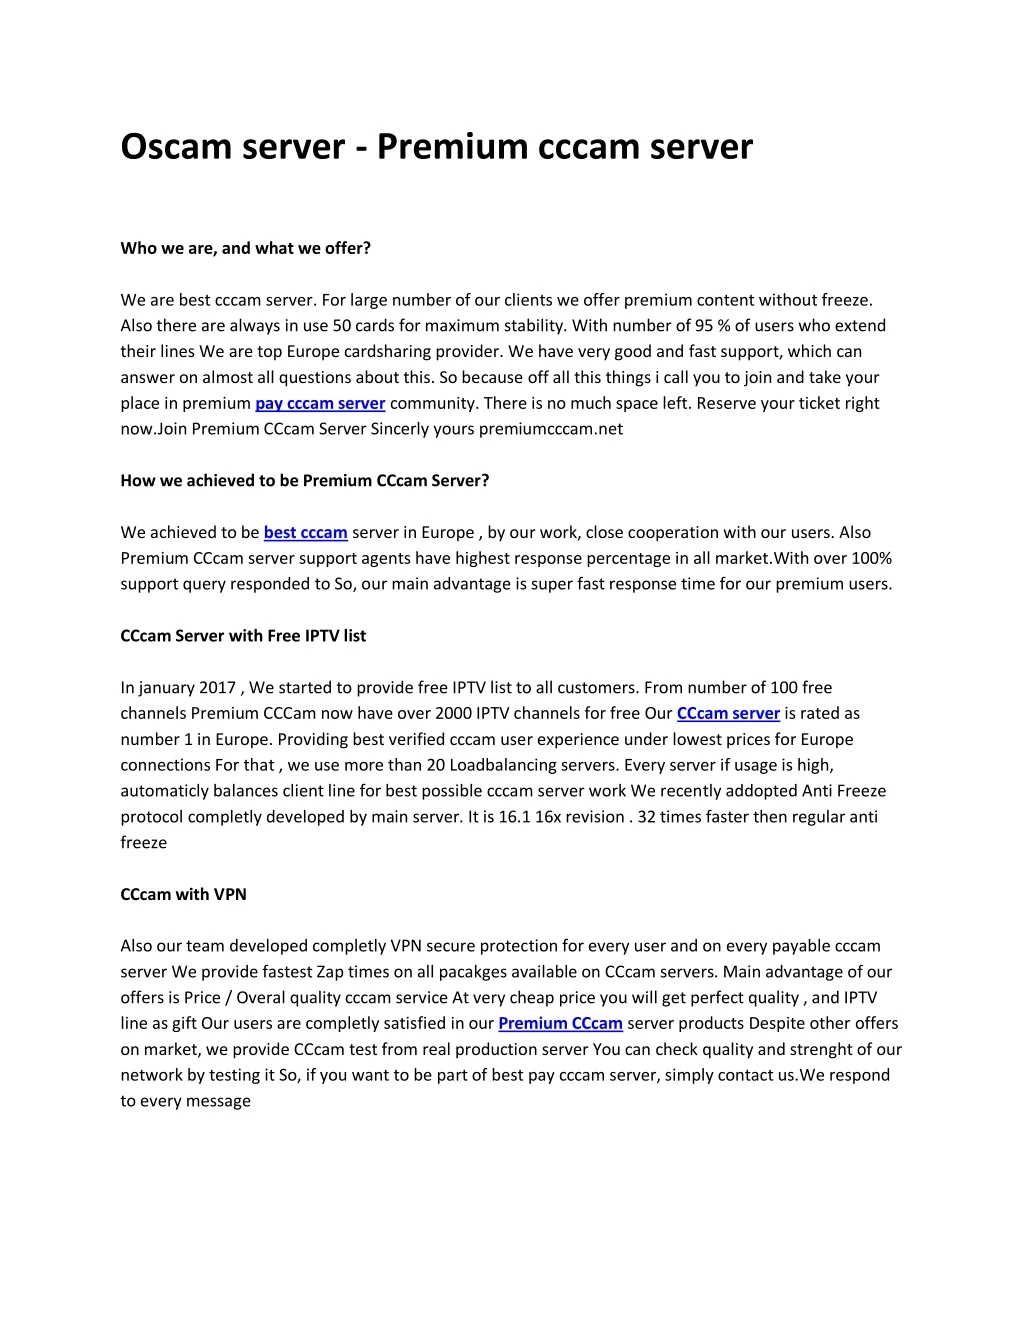 oscam server premium cccam server